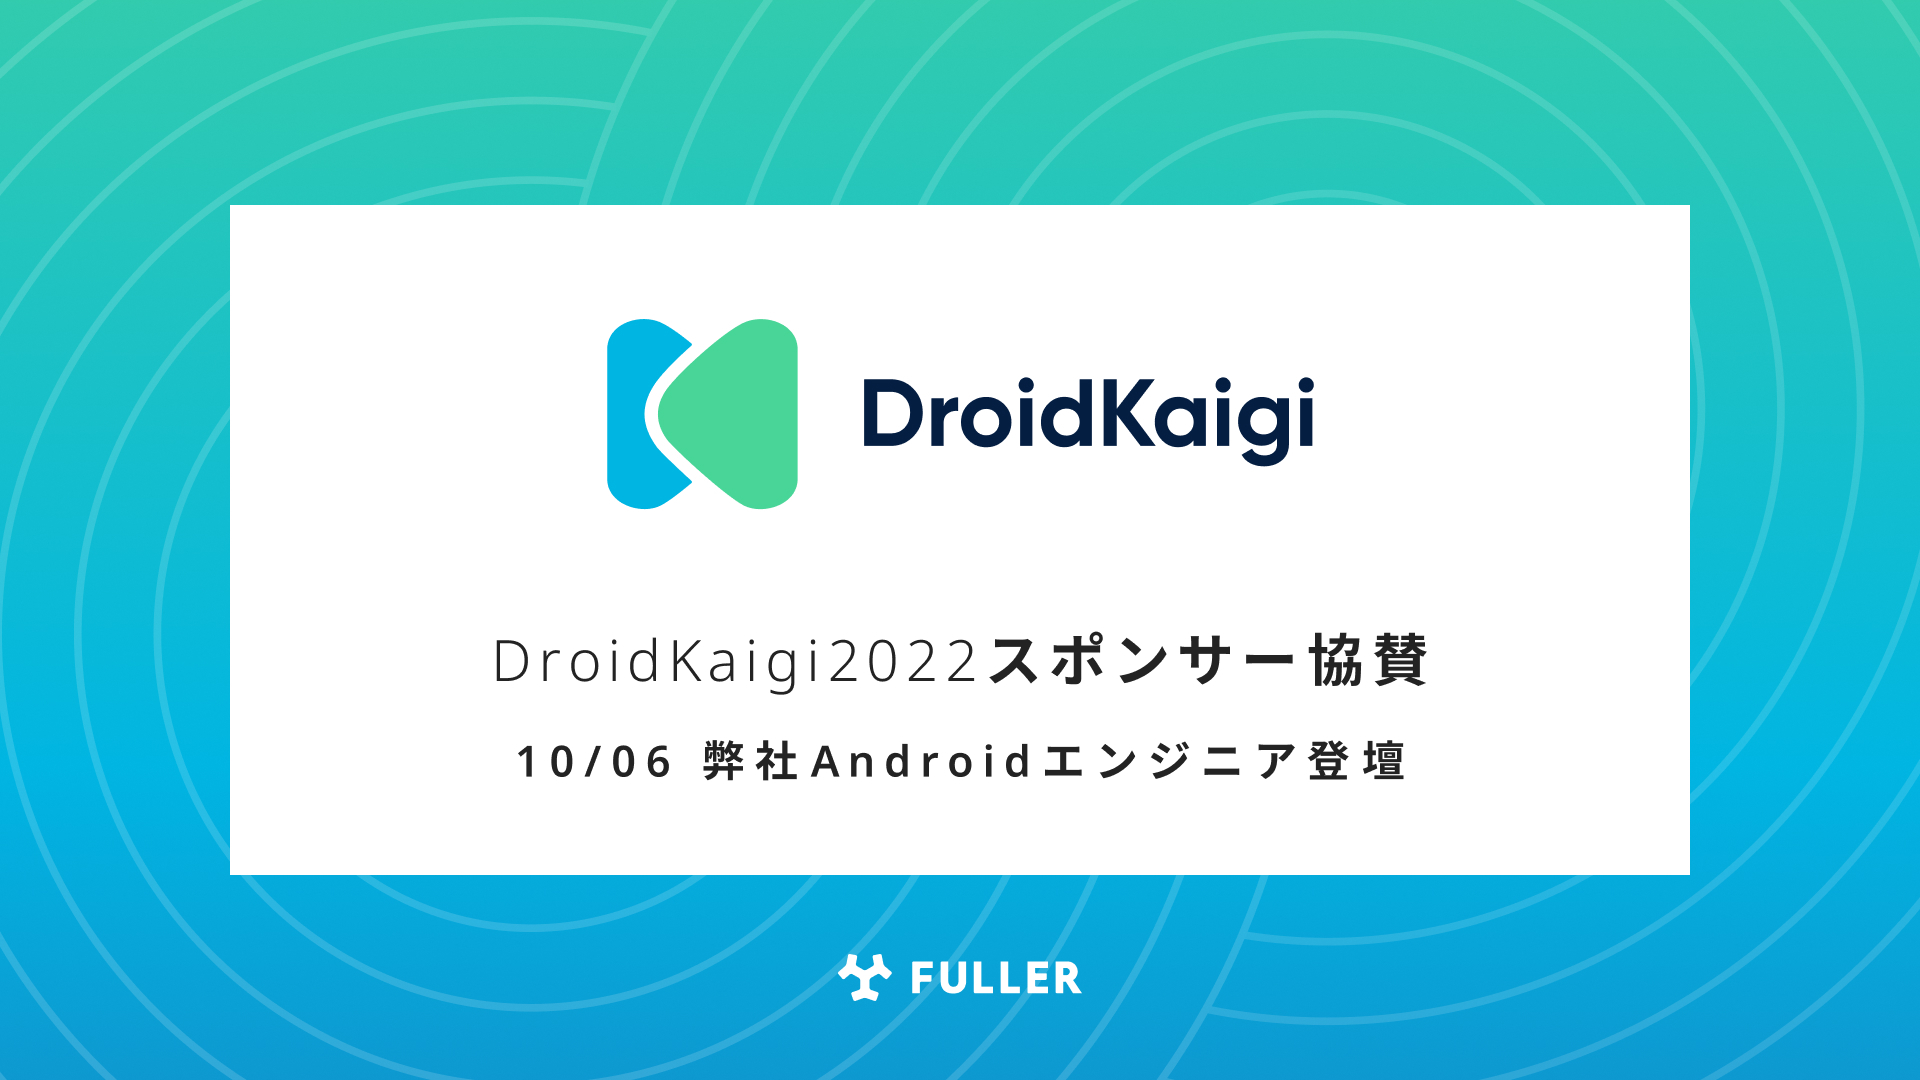 フラー、DroidKaigi 2022にスポンサー協賛。弊社Androidエンジニアも登壇。